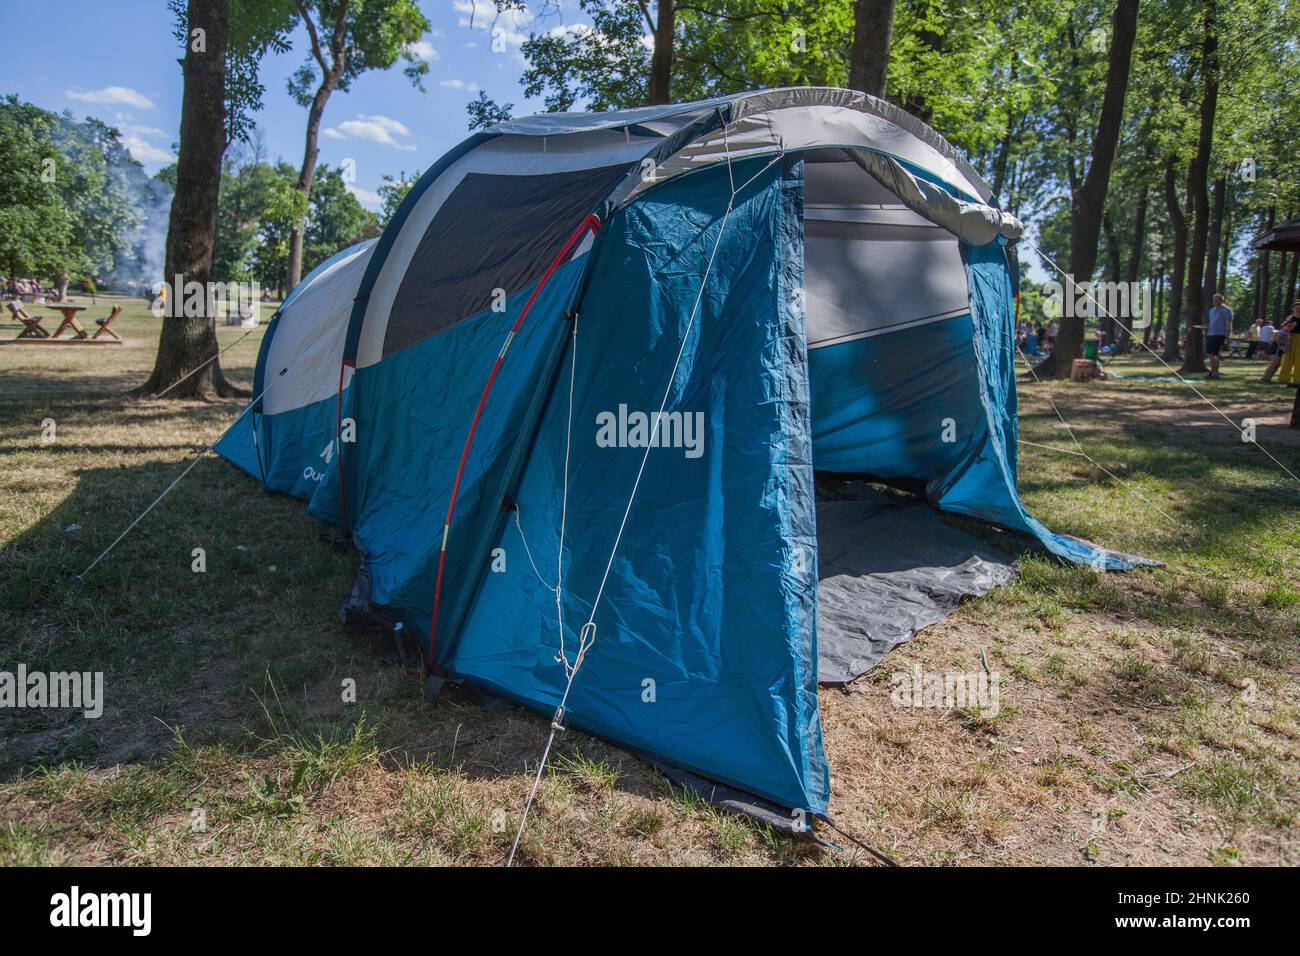 Tienda de camping en el campamento salvaje que rodea el bosque de pinos a la luz del día de verano Foto de stock